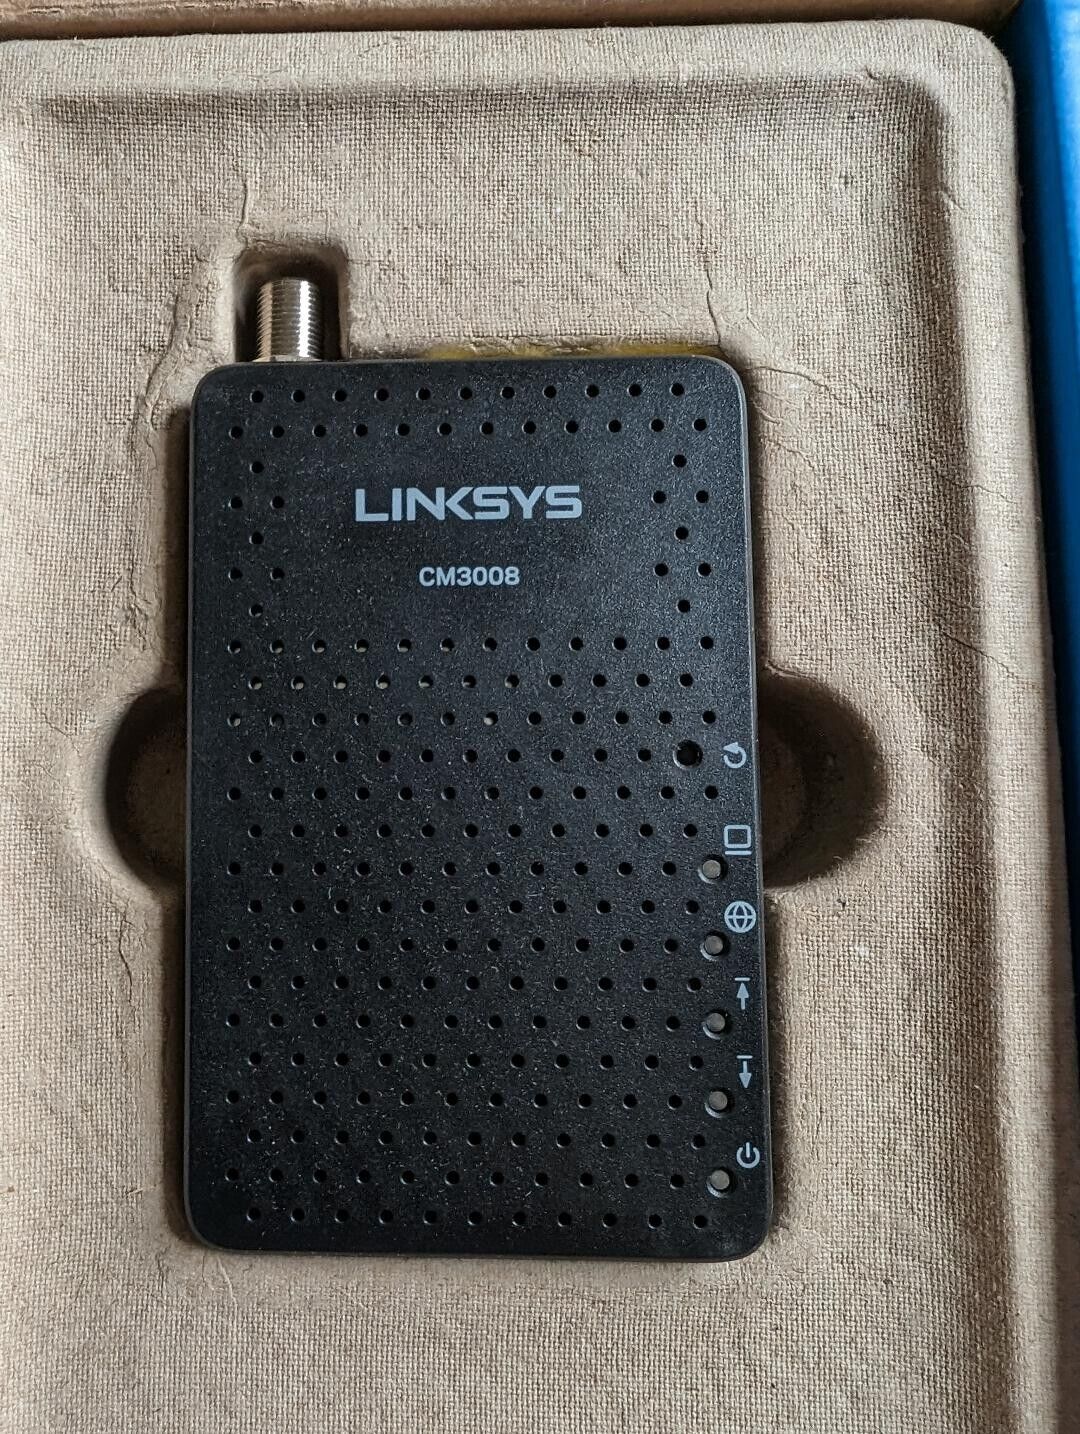 Linksys CM3008 DOCSIS 3.0 Cable Modem (8x4 Bonded Channels)